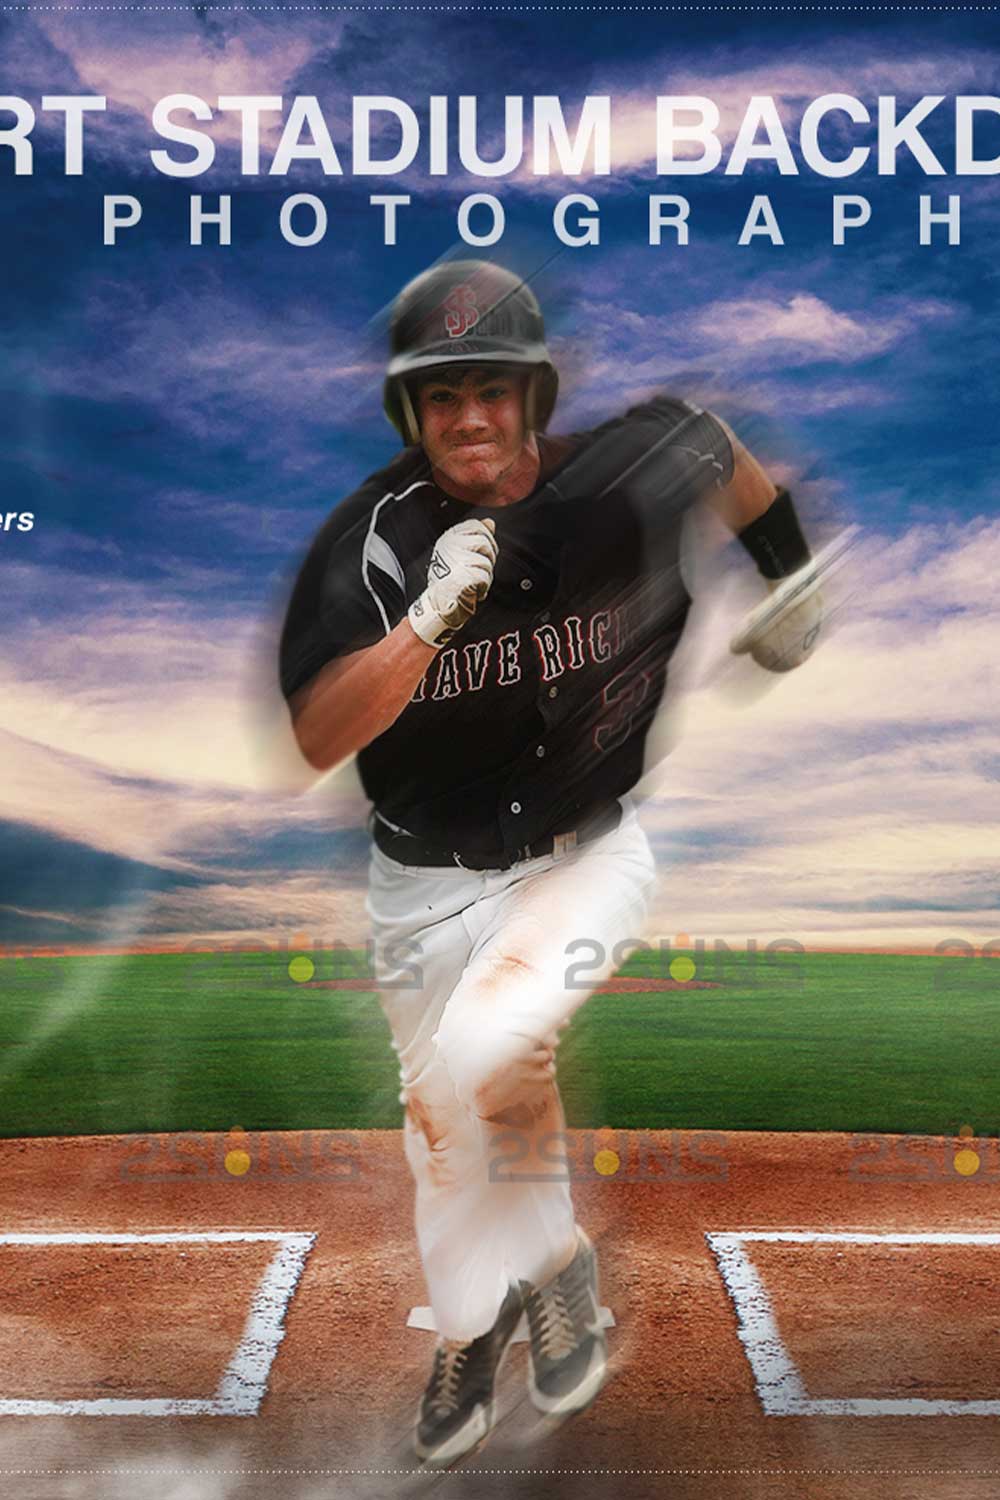 Baseball Sports Digital Photoshop Overlay Pinterest Image.